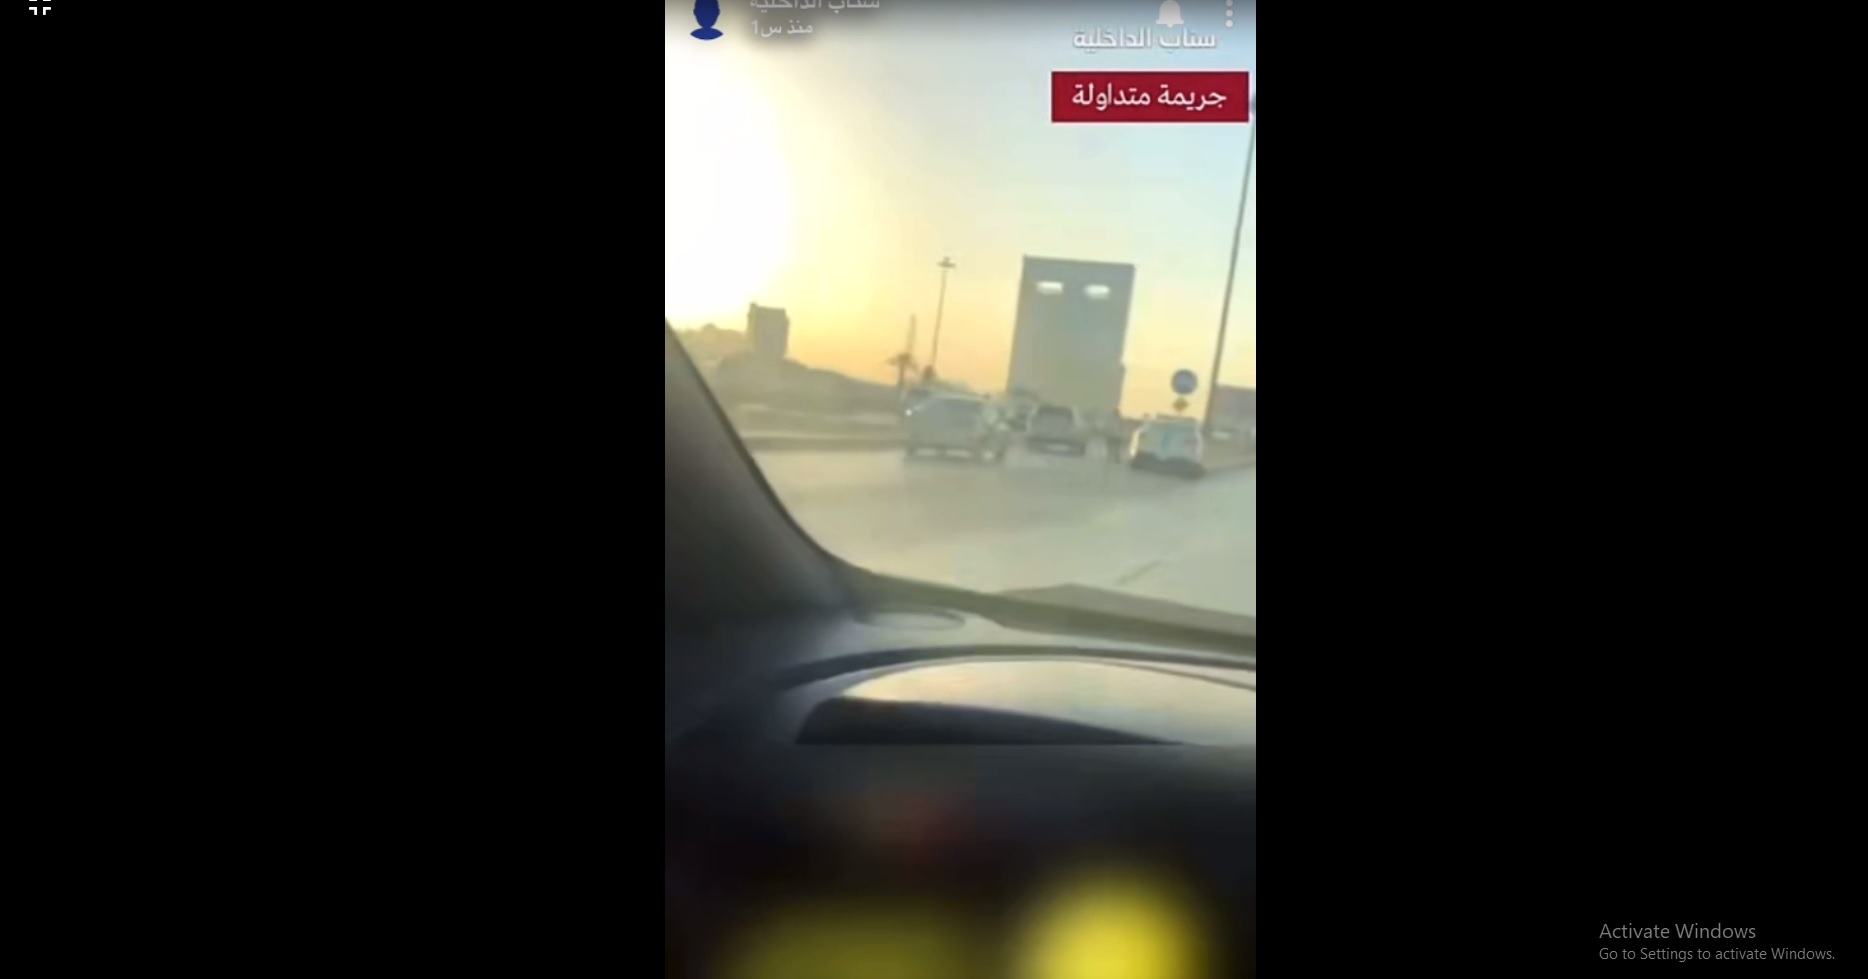 القبض على مواطن سرق 3 مركبات وقاد عكس اتجاه السير في الرياض